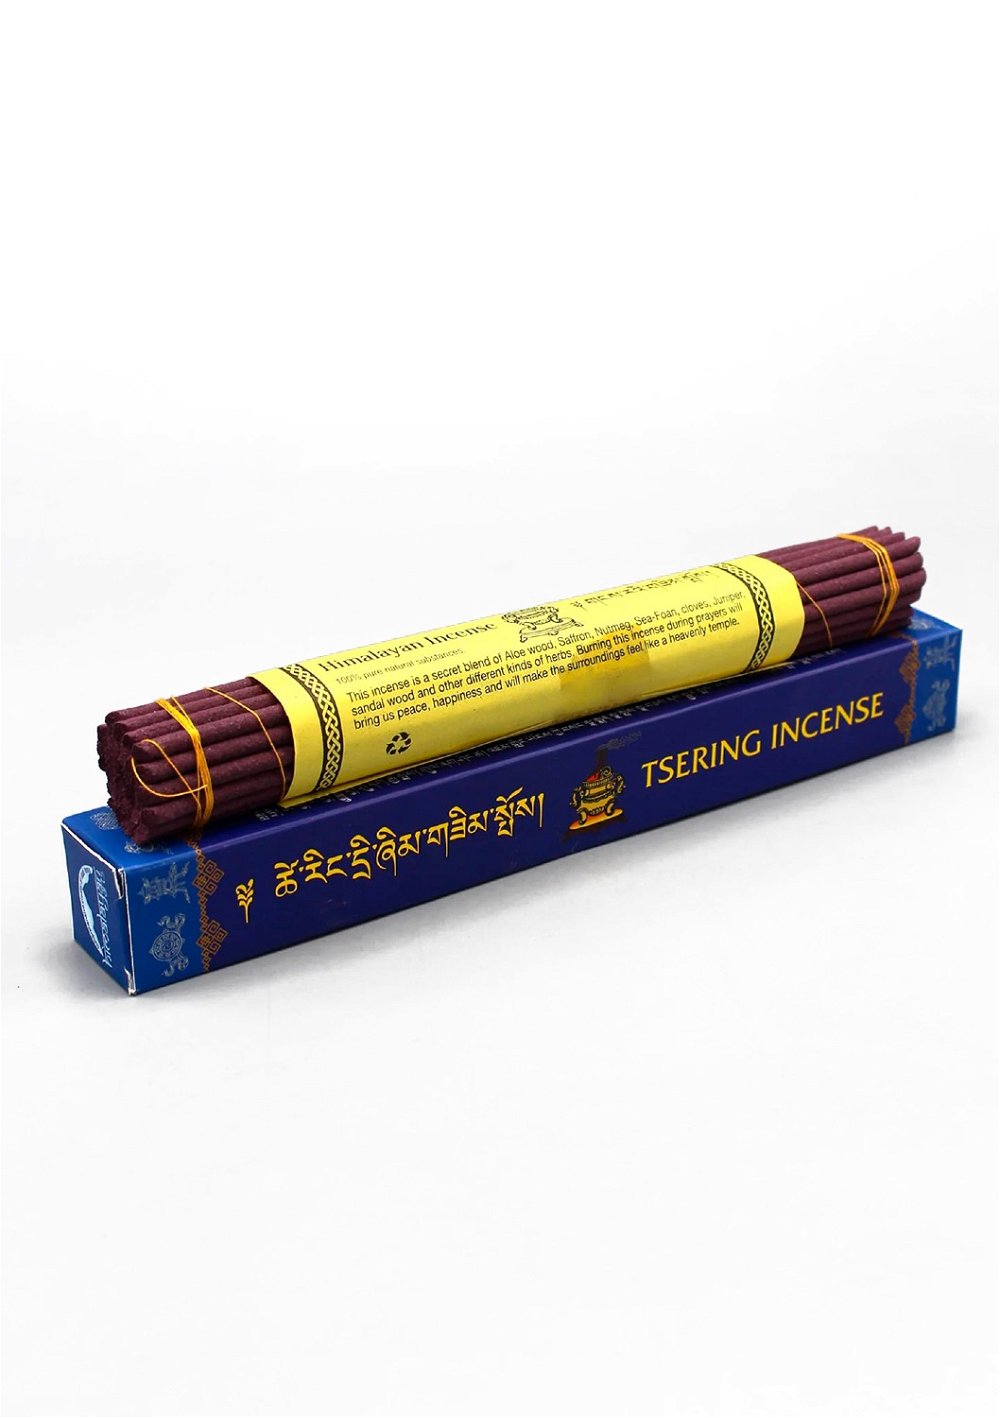 Благовоние Tsering Incense (Церингма), синяя упаковка, 30 палочек по 21,5 см, 30, Tsering, синяя упаковка, 